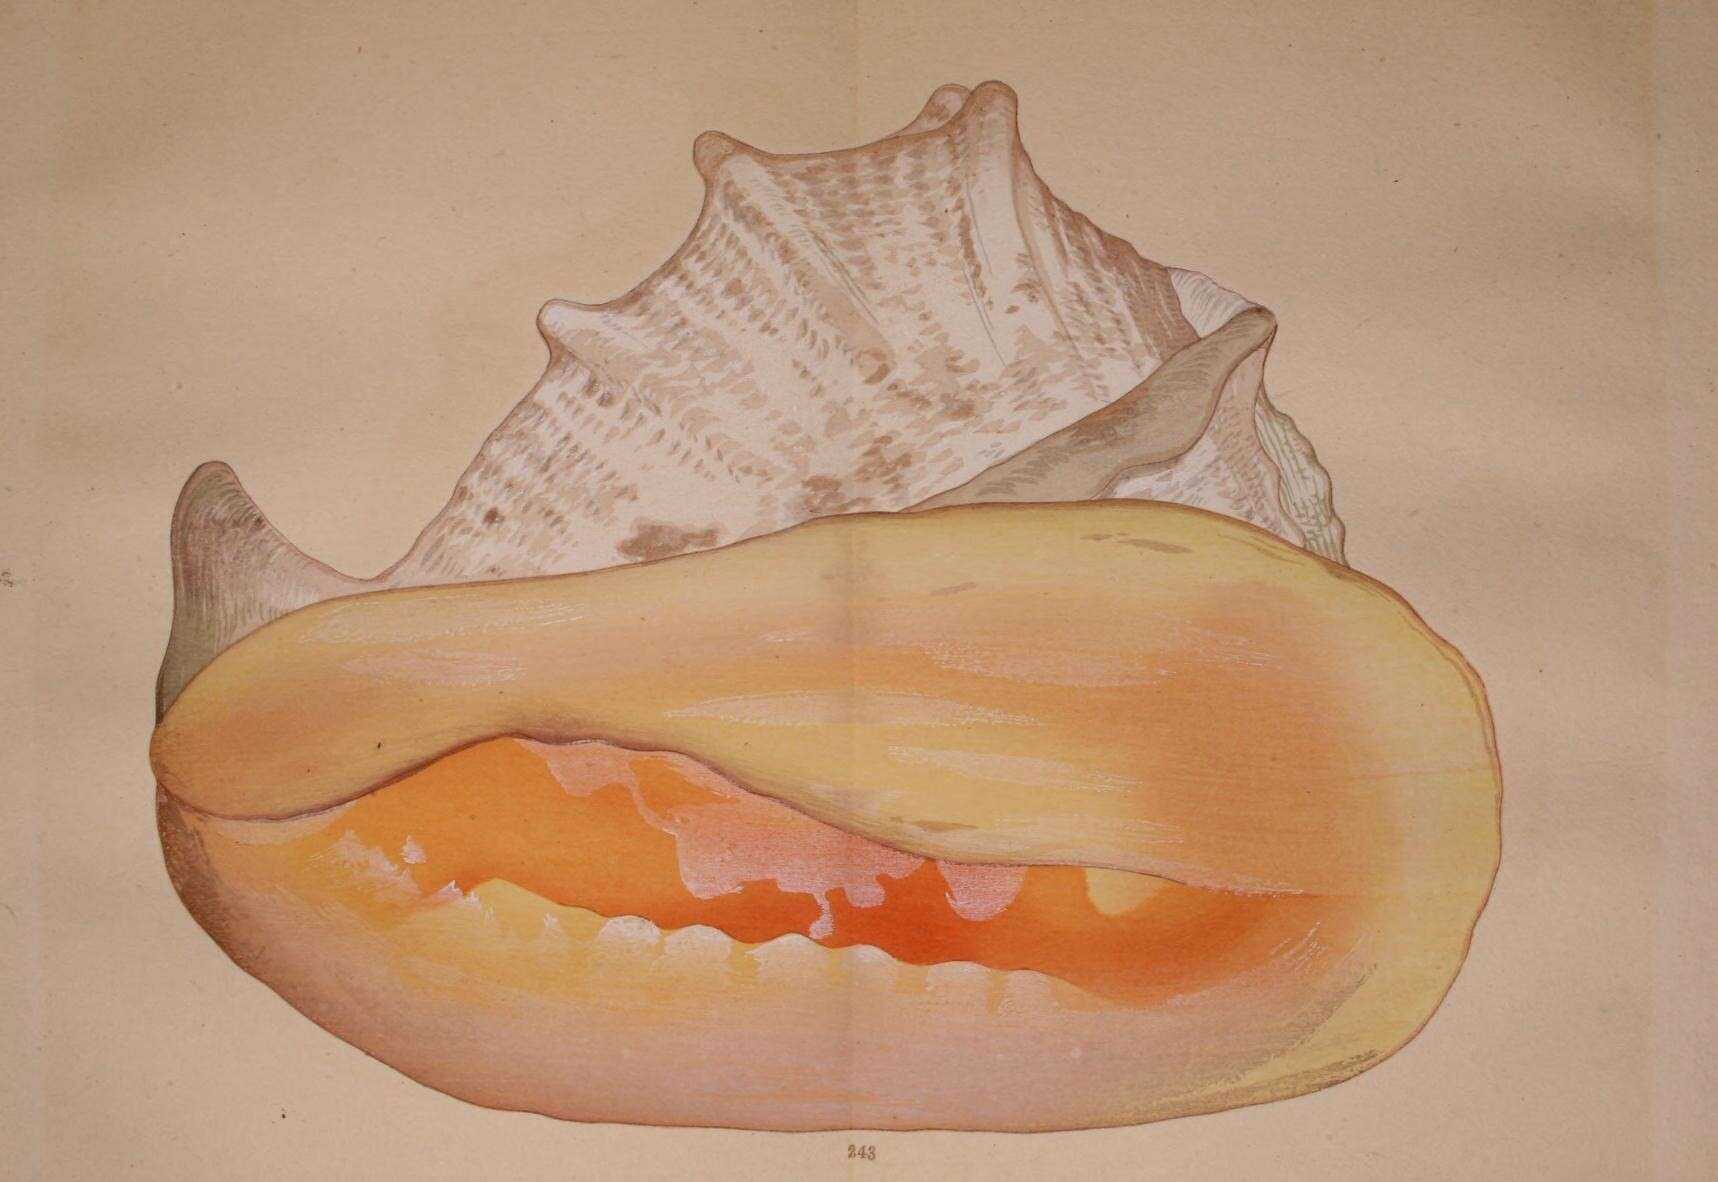 Image de Cassis cornuta (Linnaeus 1758)